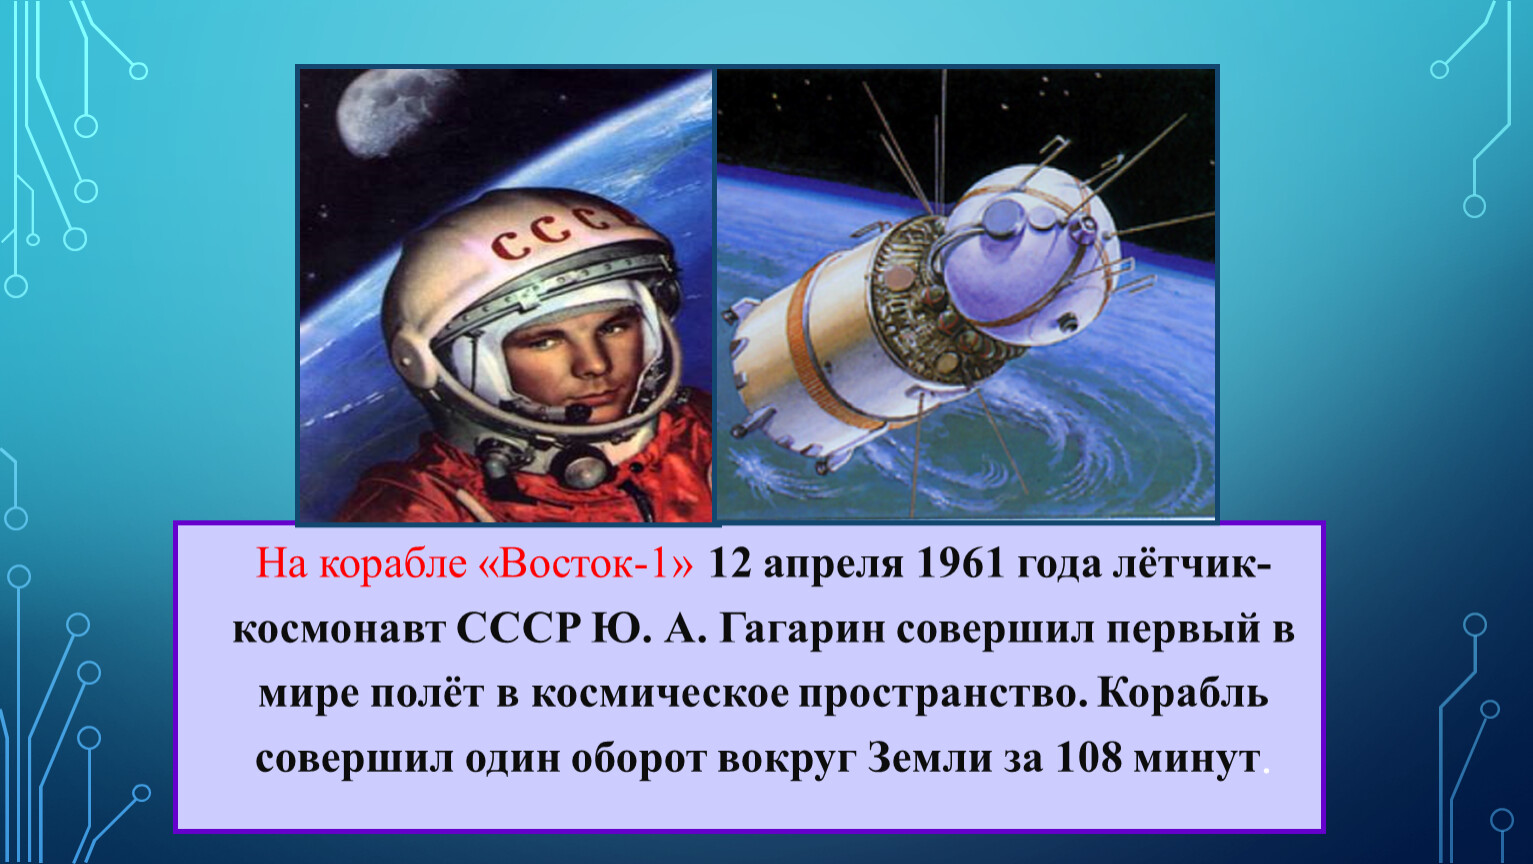 Сколько раз гагарин облетел земной. Космический корабль Гагарина Восток 1. 12 Апреля 1961 года. Космический корабль Восток 1961.